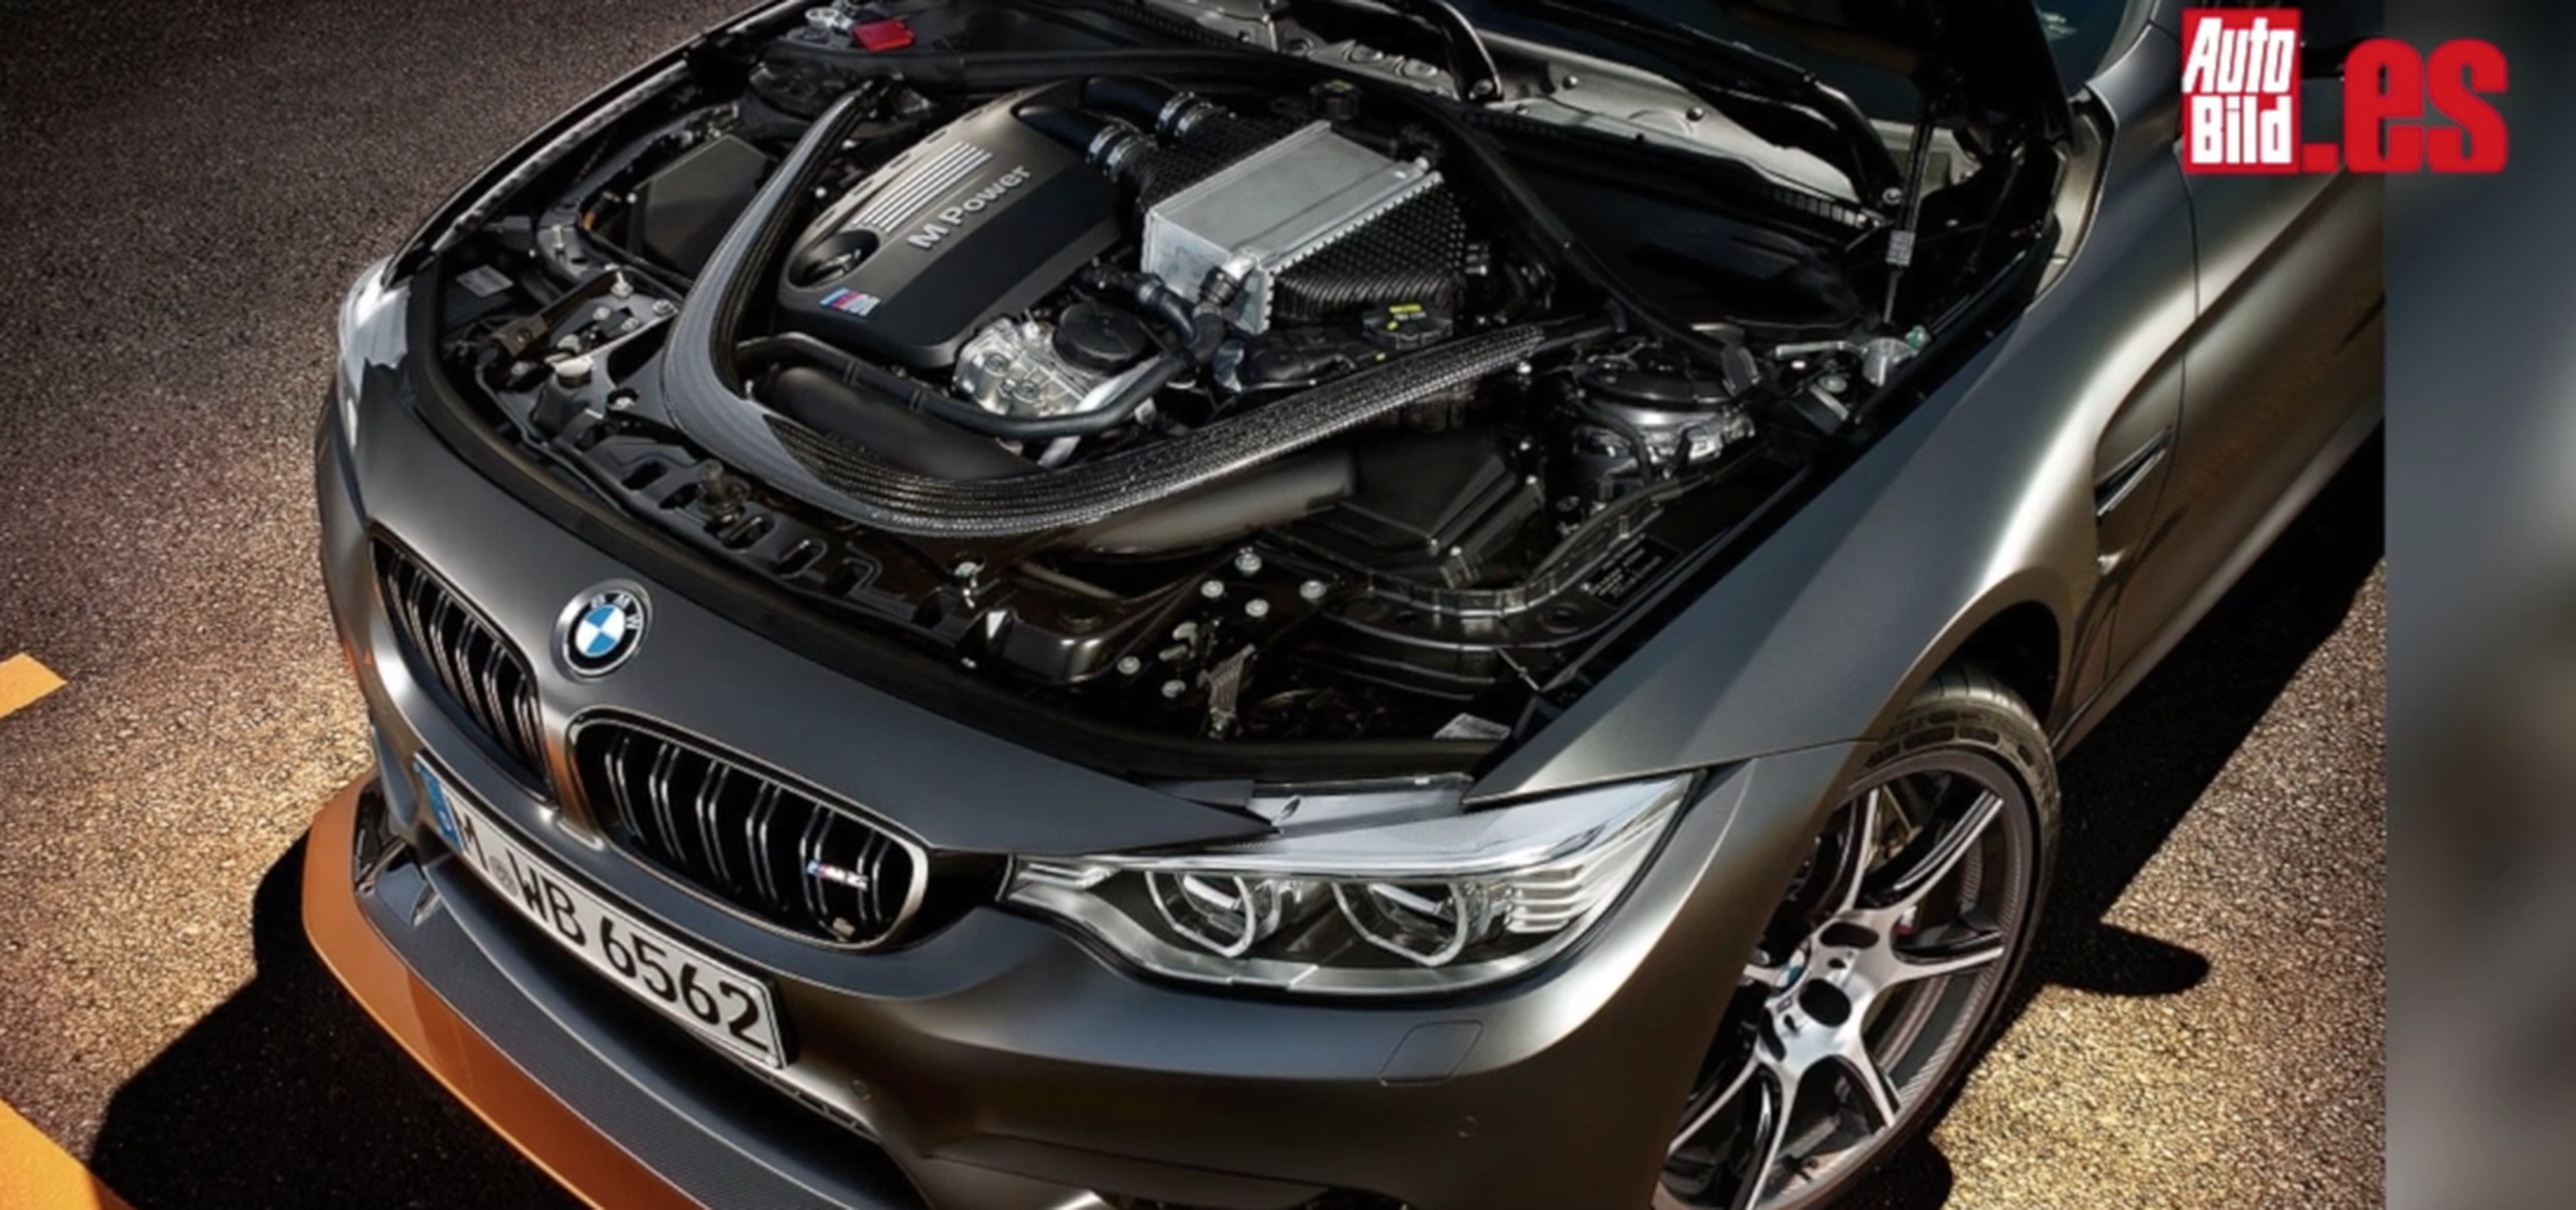 VÍDEO: Las siete últimas innovaciones de BMW